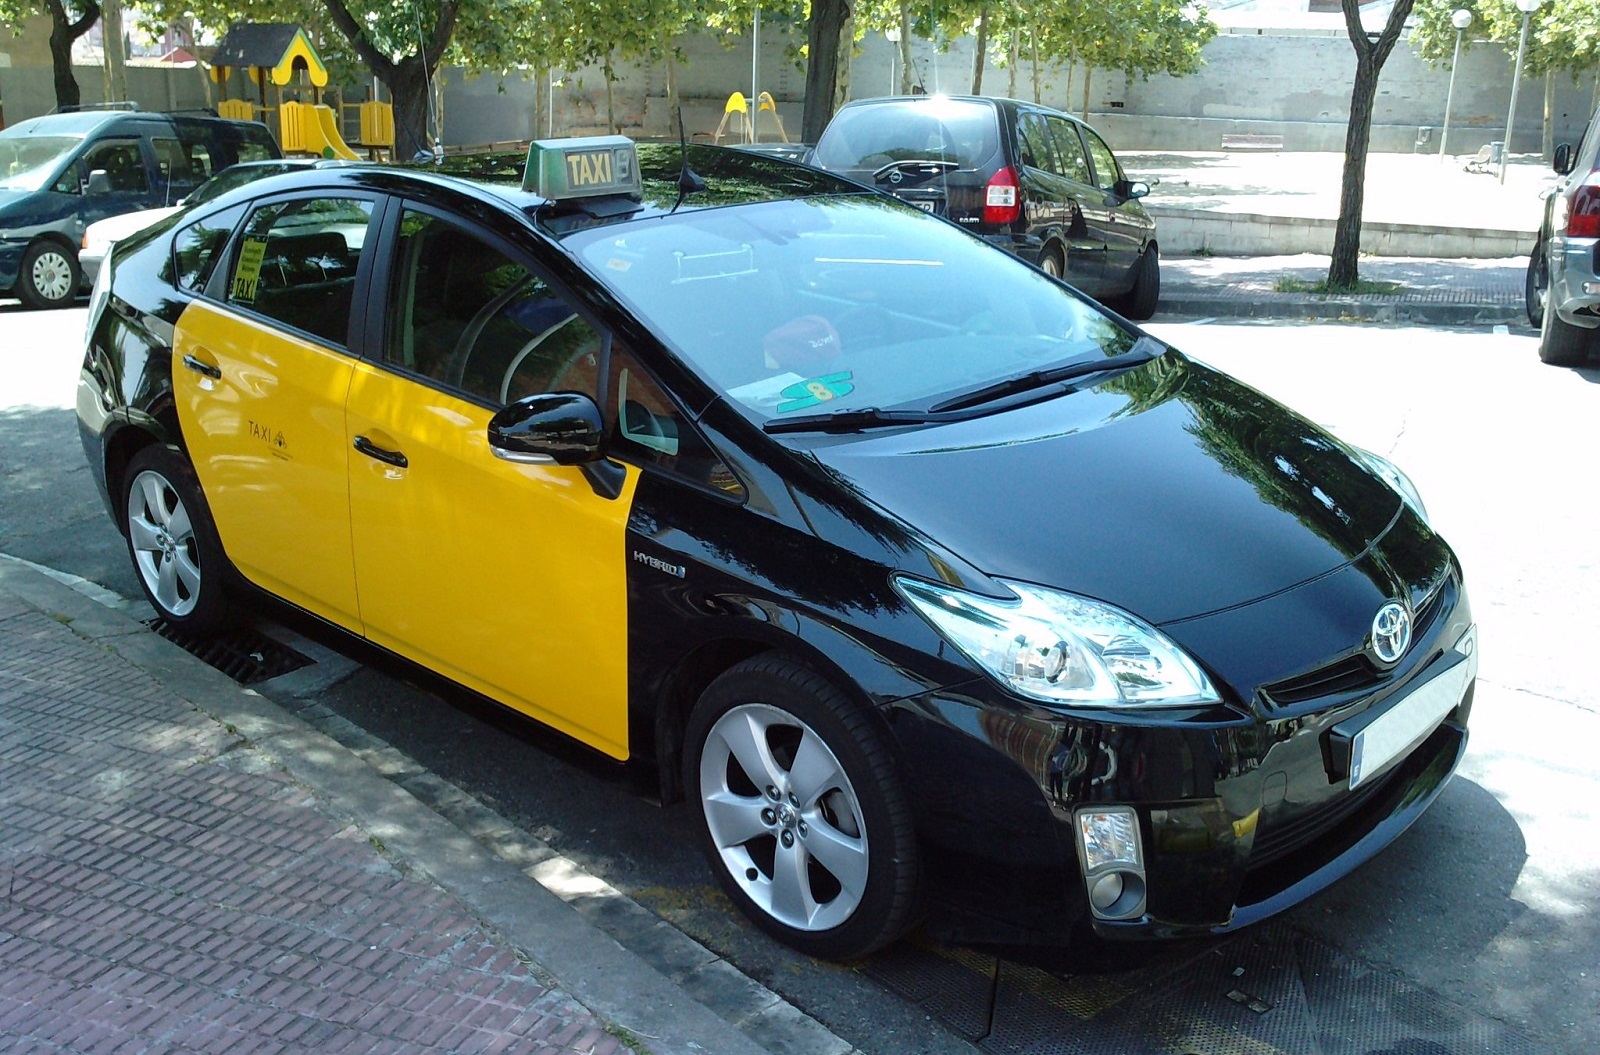 Поездка на такси в Барселоне: тарифы и правила